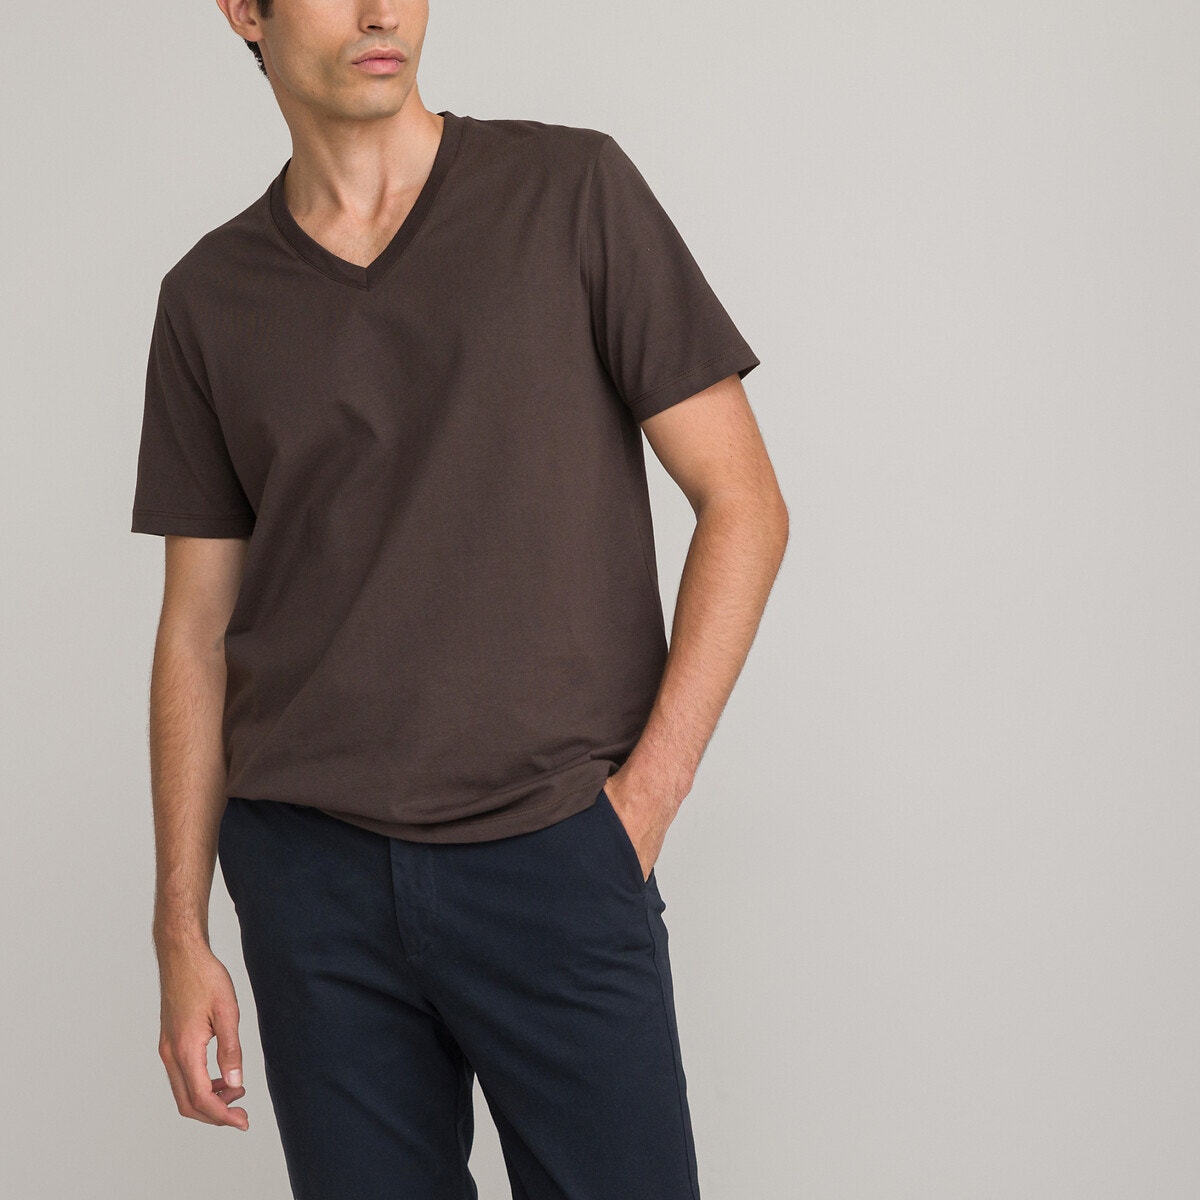 Μόδα > Ανδρικά > Ρούχα > T-shirt > Κοντά μανίκια Κοντομάνικη μπλούζα με V από οργανικό βαμβάκι